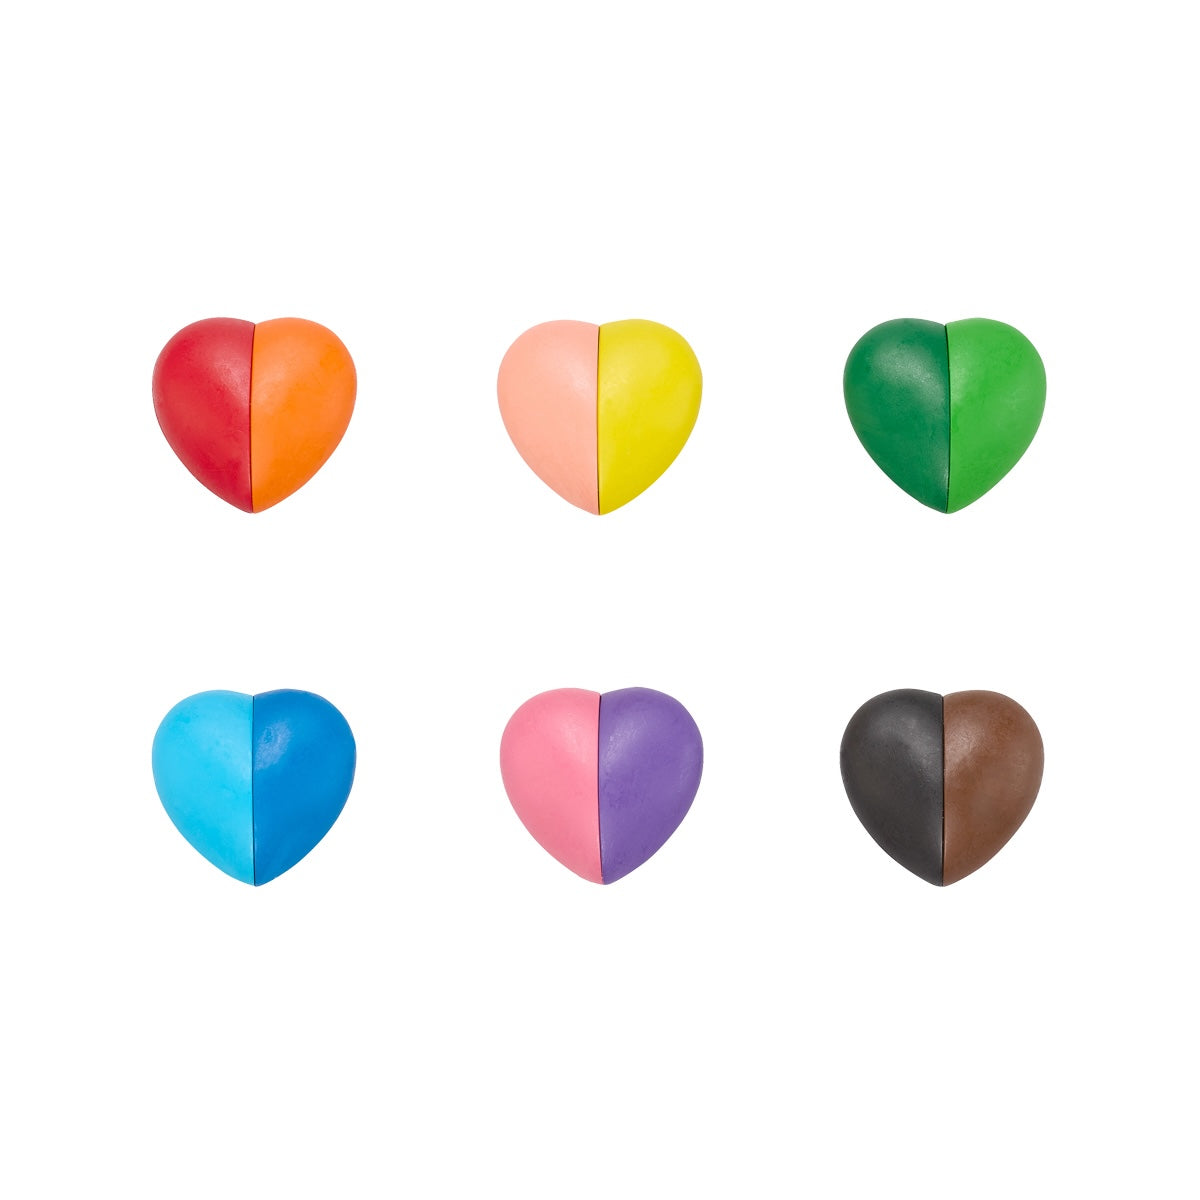 De I Heart Art erasable crayons van Ooly zijn niet alleen schattig, ze zijn ook functioneel. Lekker kleuren met de 6 hartvormige krijtjes in 12 verschillende kleuren. Uitgumbaar, plakt niet en geeft niet af. VanZus